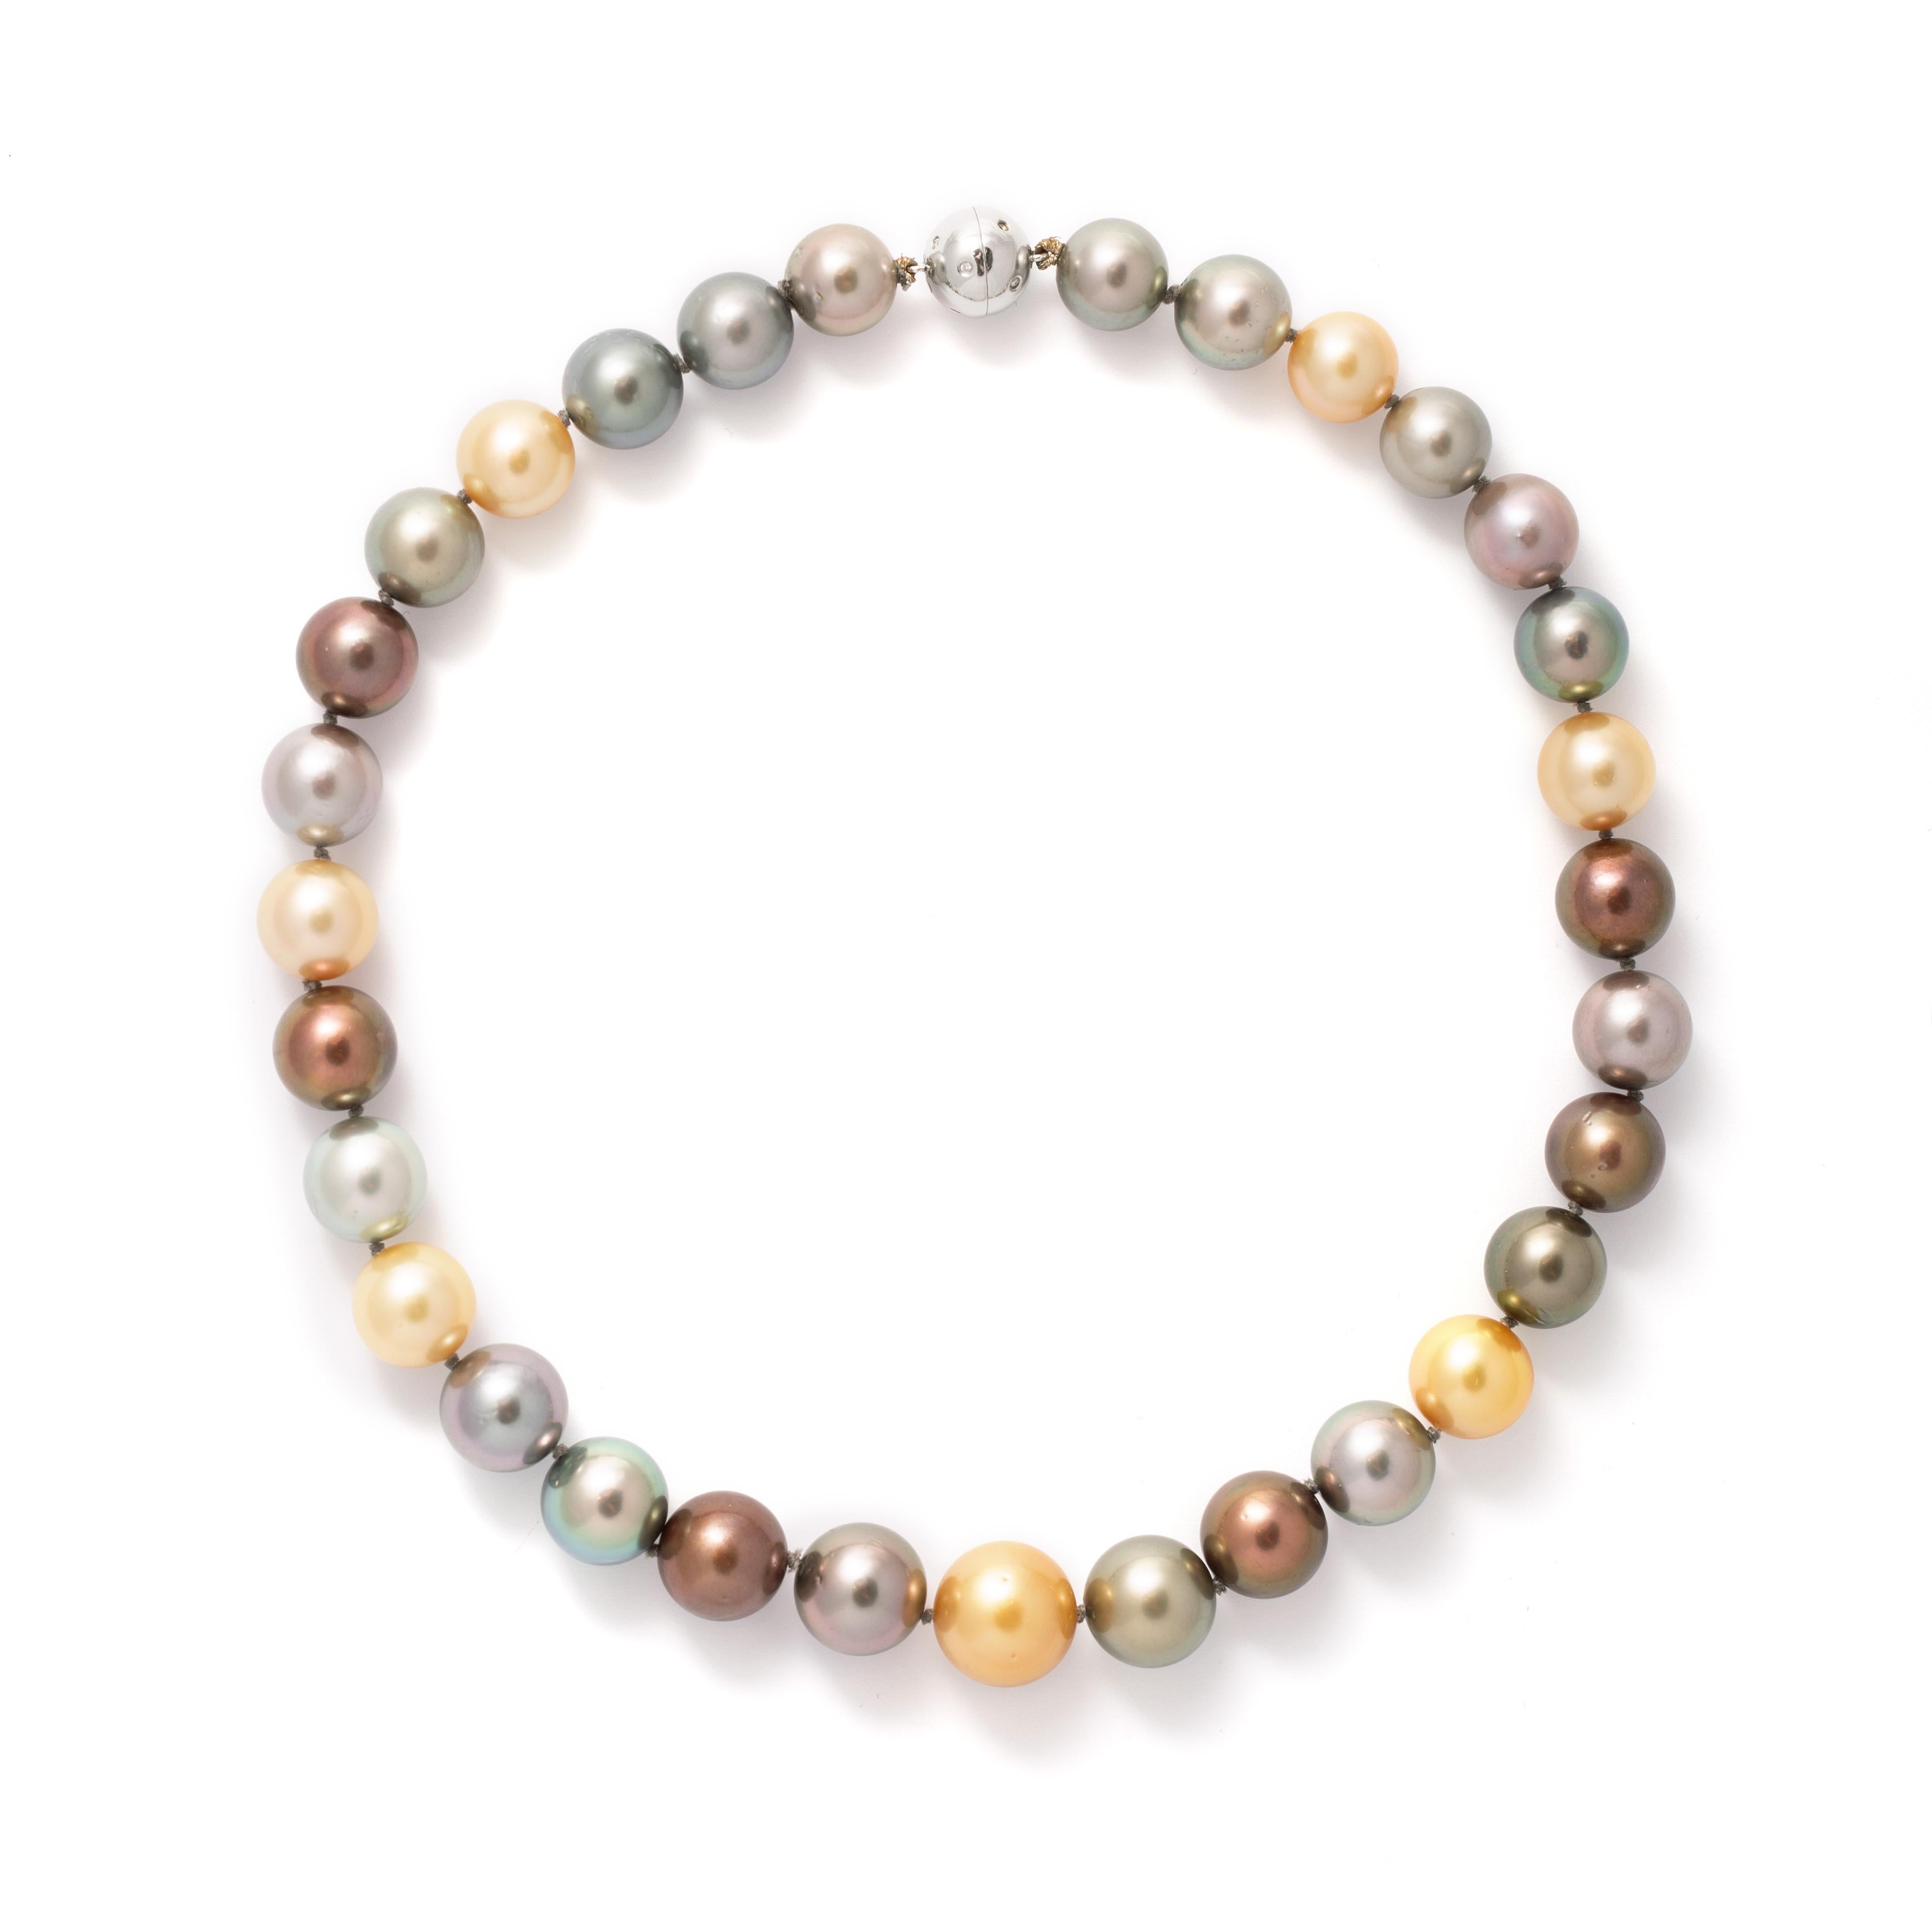 Halskette mit farbigen Zuchtperlen, Weißgold und Diamantverschluss.

Gesamtlänge: 18,11 Zoll (46,00 Zentimeter).
Gesamtgewicht: 103,83 Gramm.
